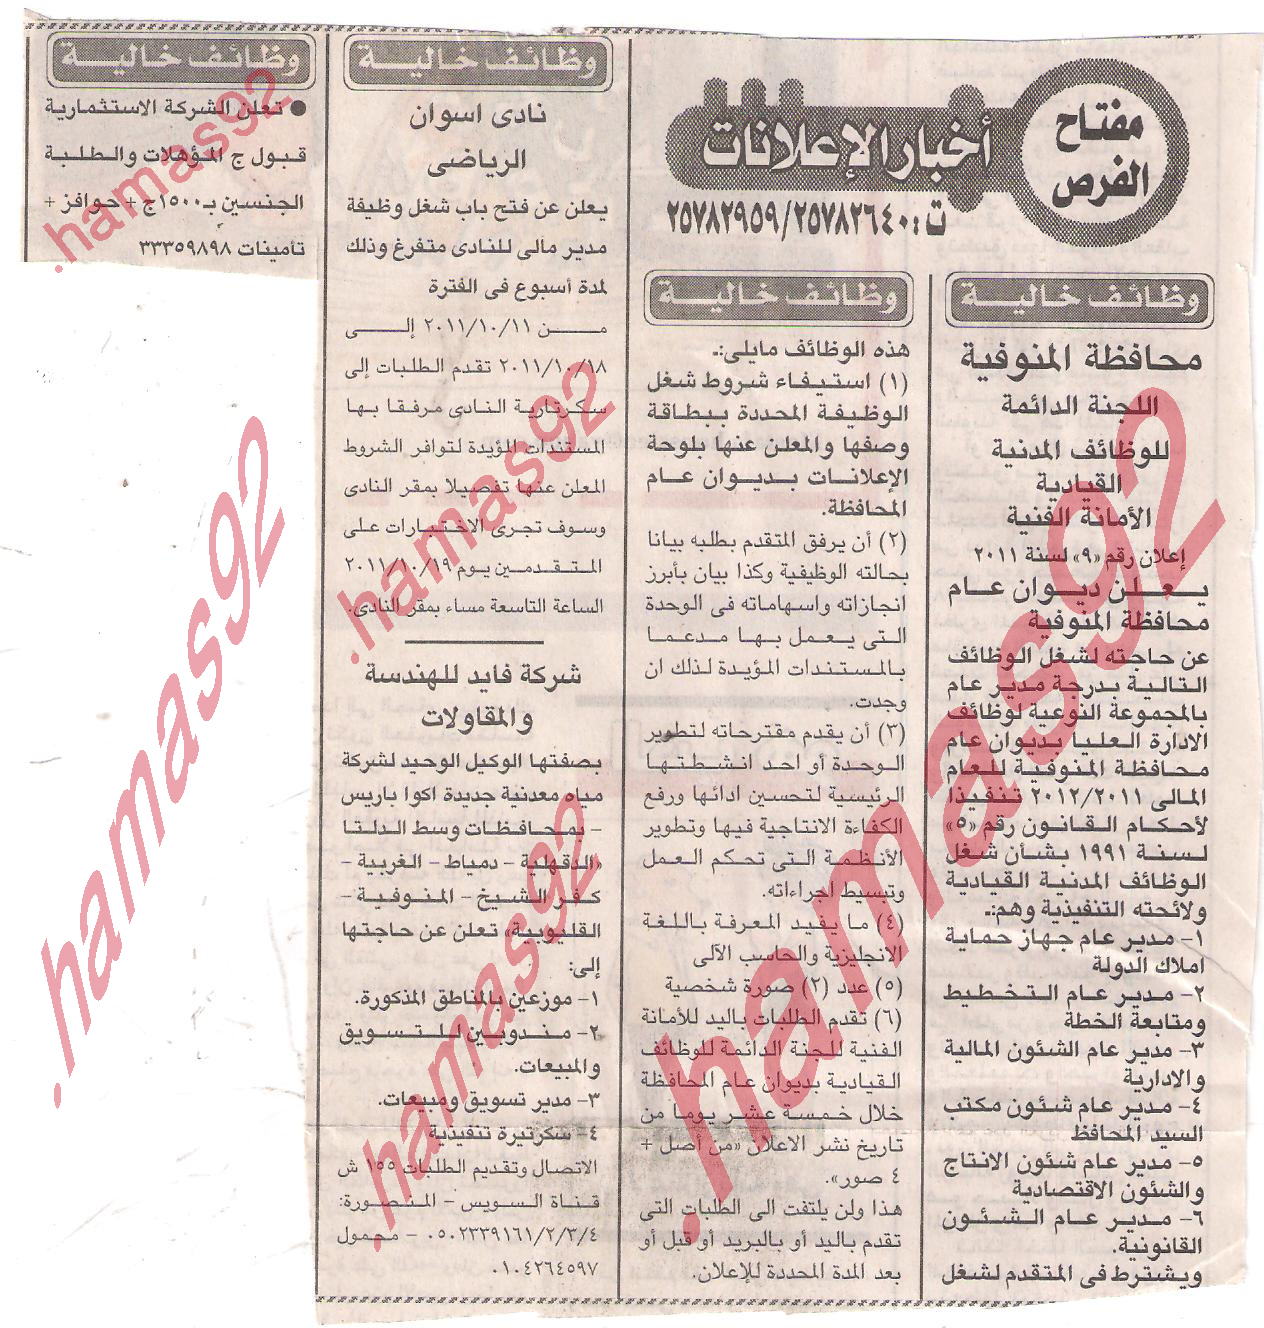 وظائف جريدة الاخبار الاثنين 10/10/2011-وظائف خالية من جريدة الاخبار 10 اكتوبر 2011  Picture+001